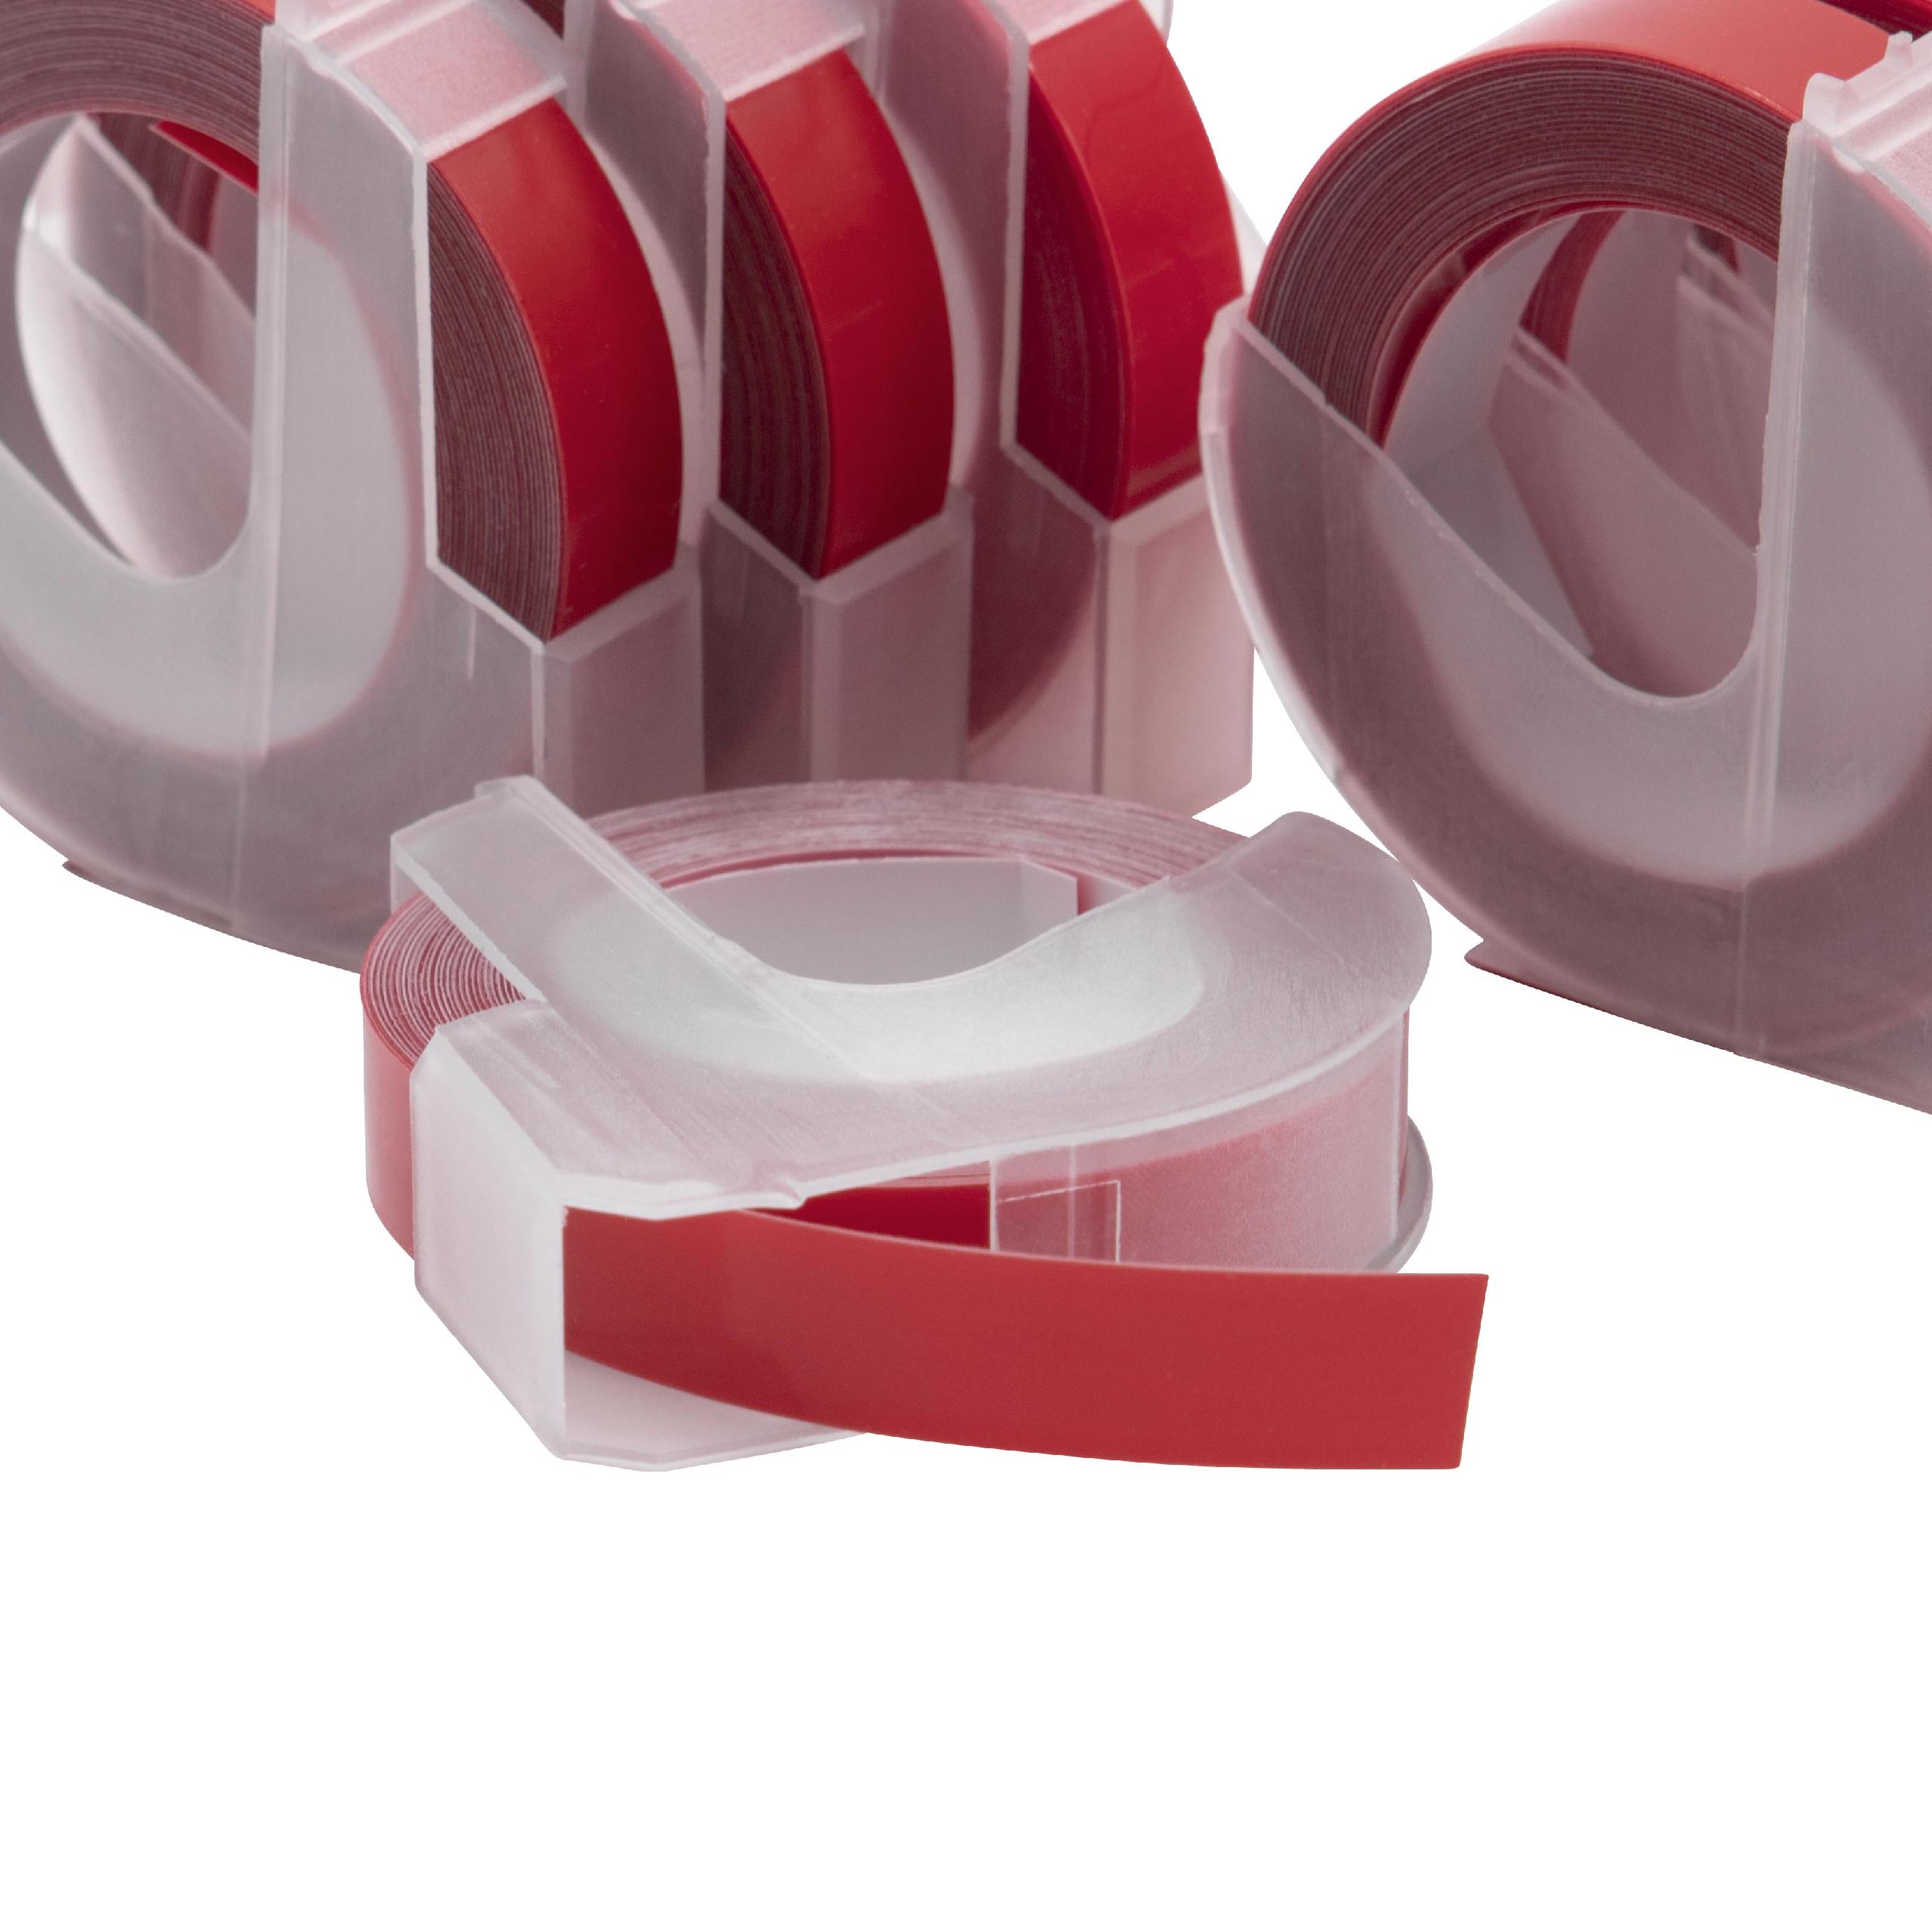 10x Casete cinta relieve 3D Casete cinta escritura reemplaza Dymo 0898150, 520102 Blanco su Rojo